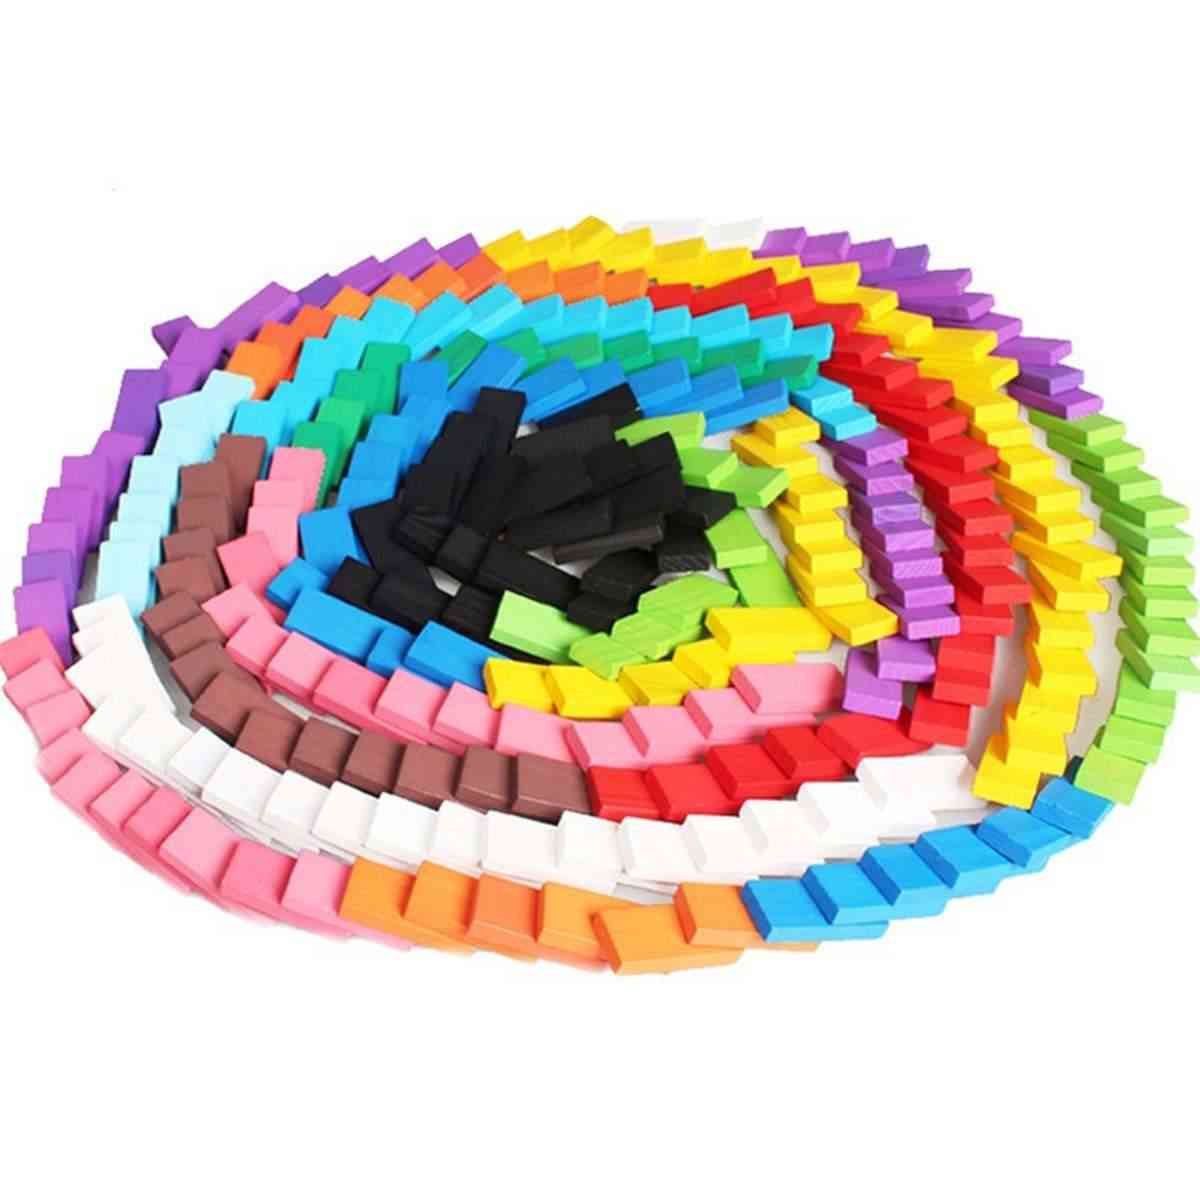 120pcs dominó juguetes de madera para niños - kits de bloques de dominó de colores juegos de dominó de aprendizaje temprano, juguetes educativos para niños -